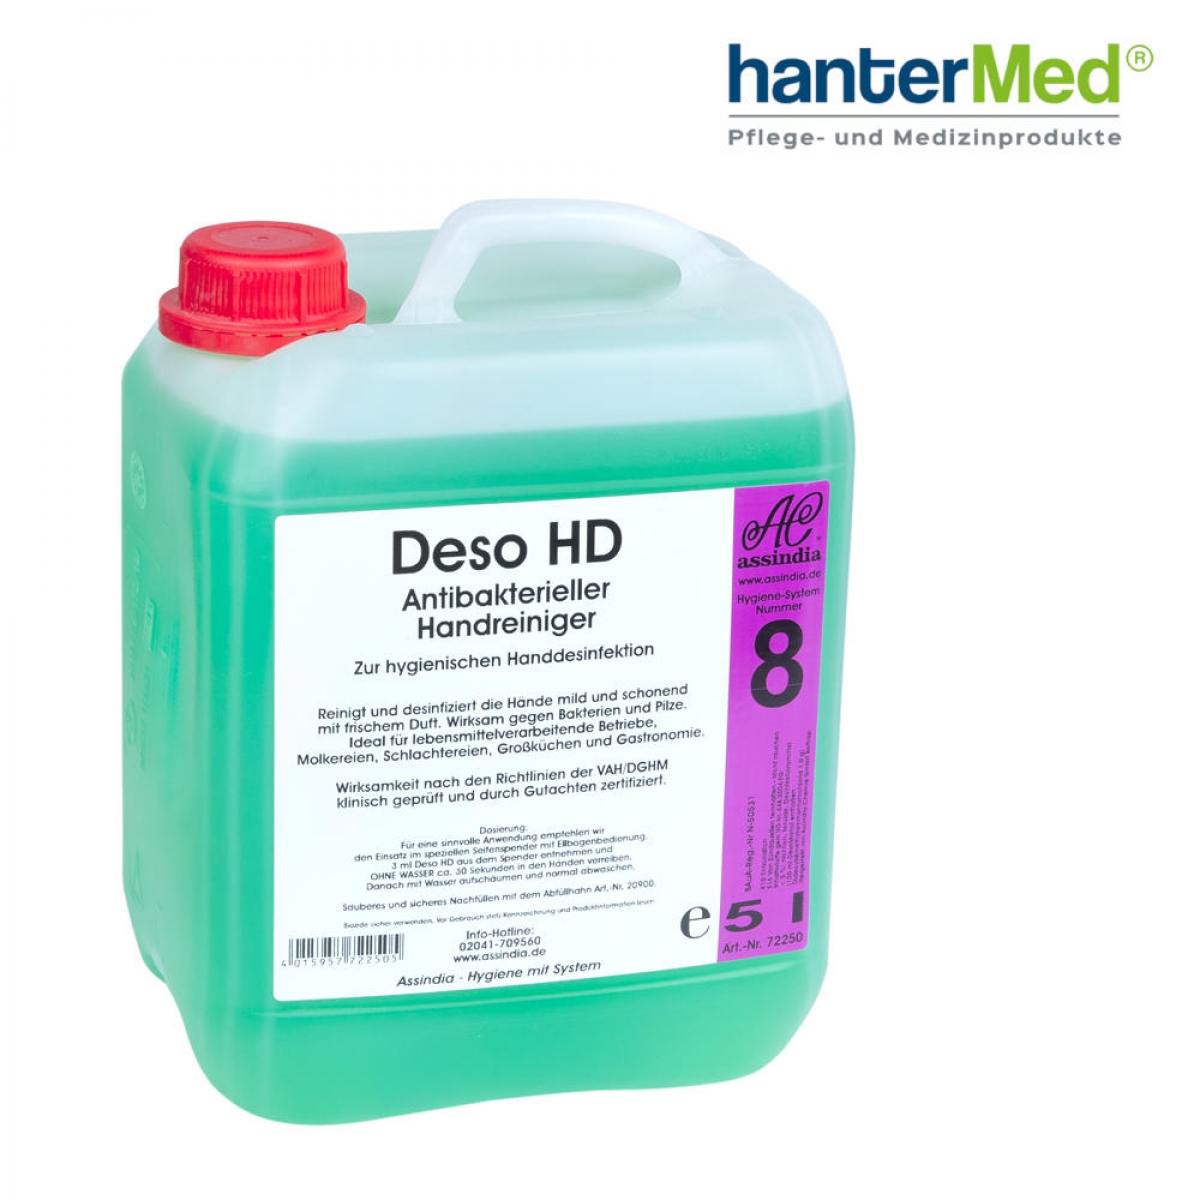 Deso HD Antibakterieller Handreiniger, 5l Kanister